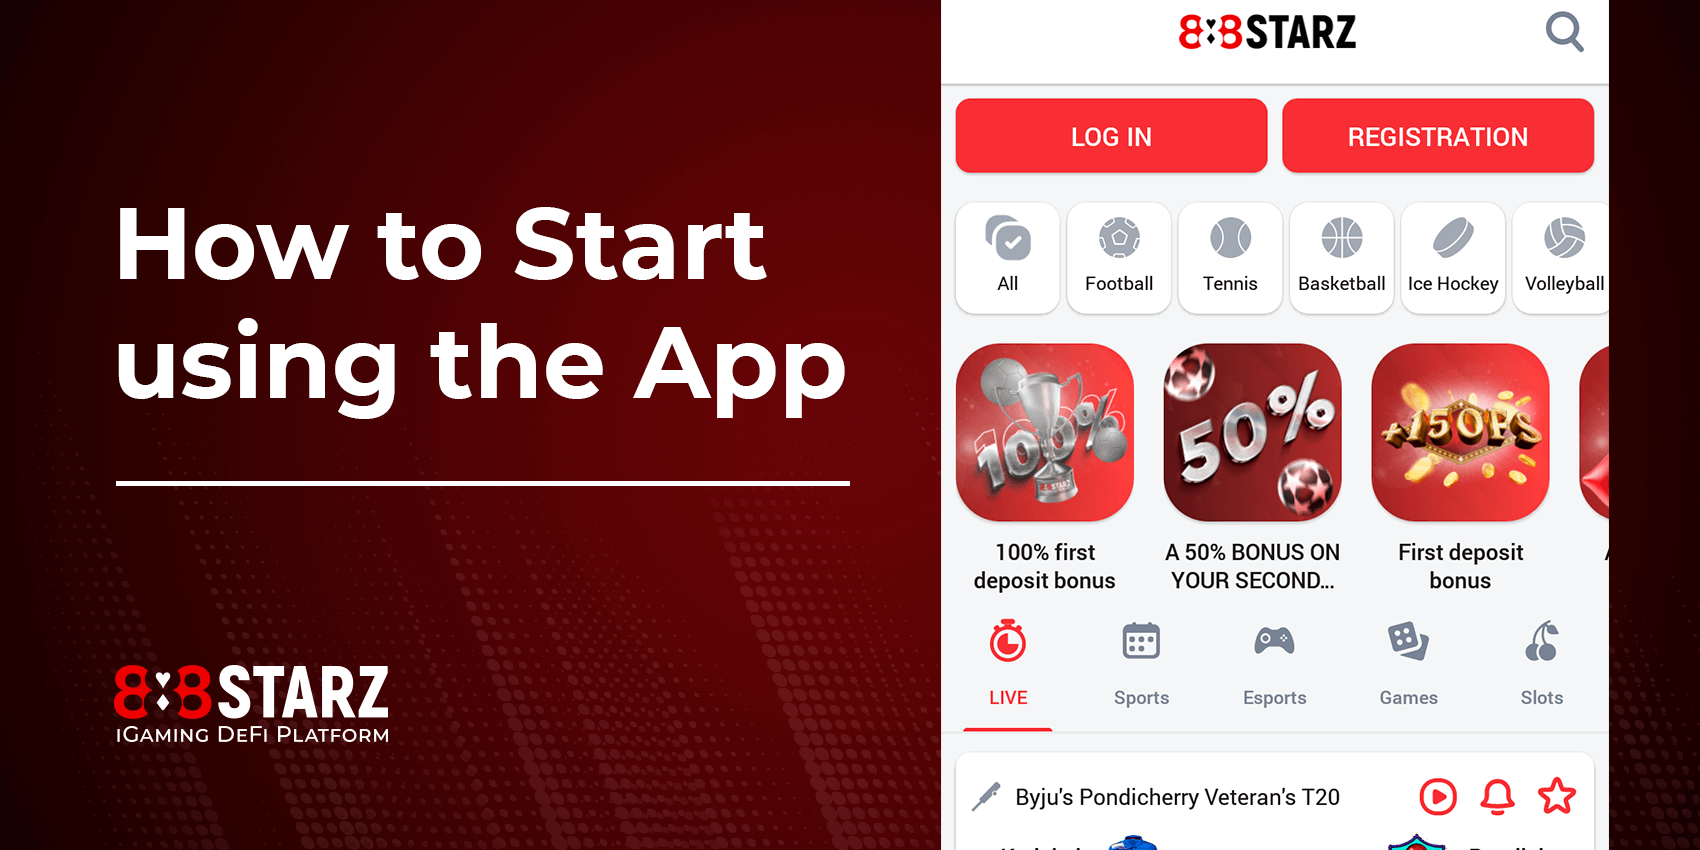 888Starz ऐप का इस्तेमाल कैसे शुरू करें?